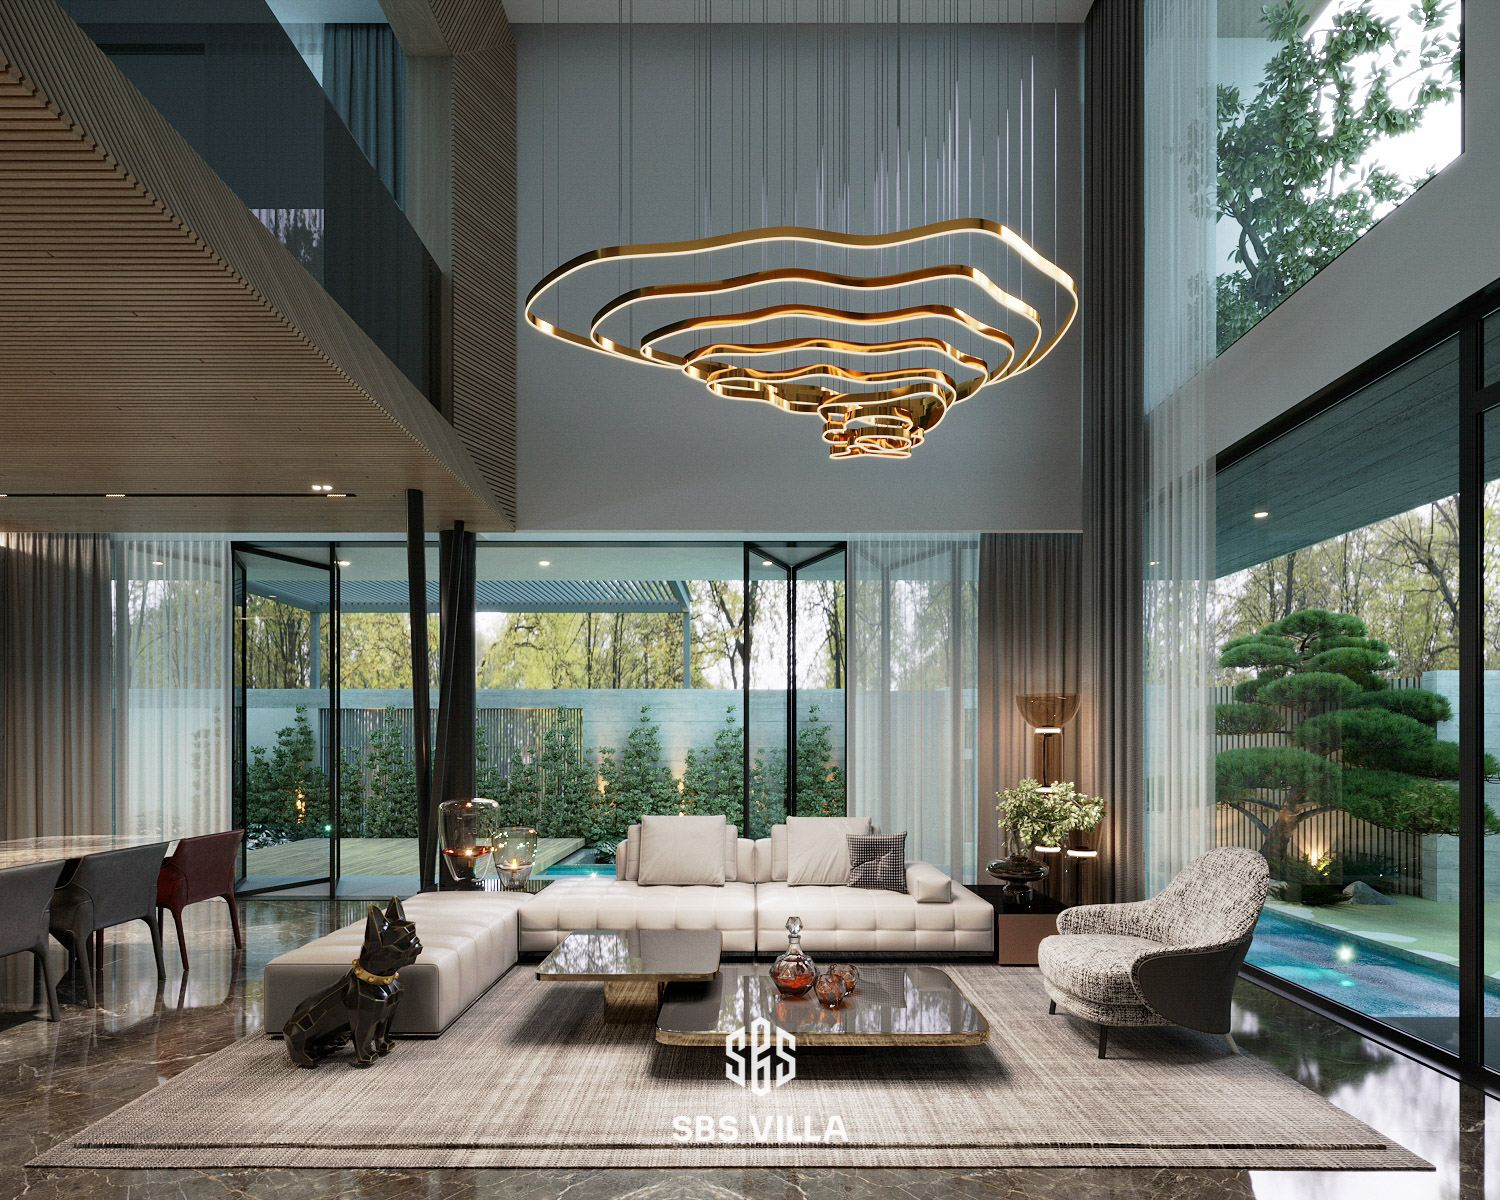 Mẫu phòng khách mang phong cách hiện đại - Thiết kế phòng khách nổi bật với lối kiến trúc thông tầng, kết hợp cùng hệ thống vách kính lớn tạo nên cảm giác không gian khoáng đạt và vô cùng thoải mái